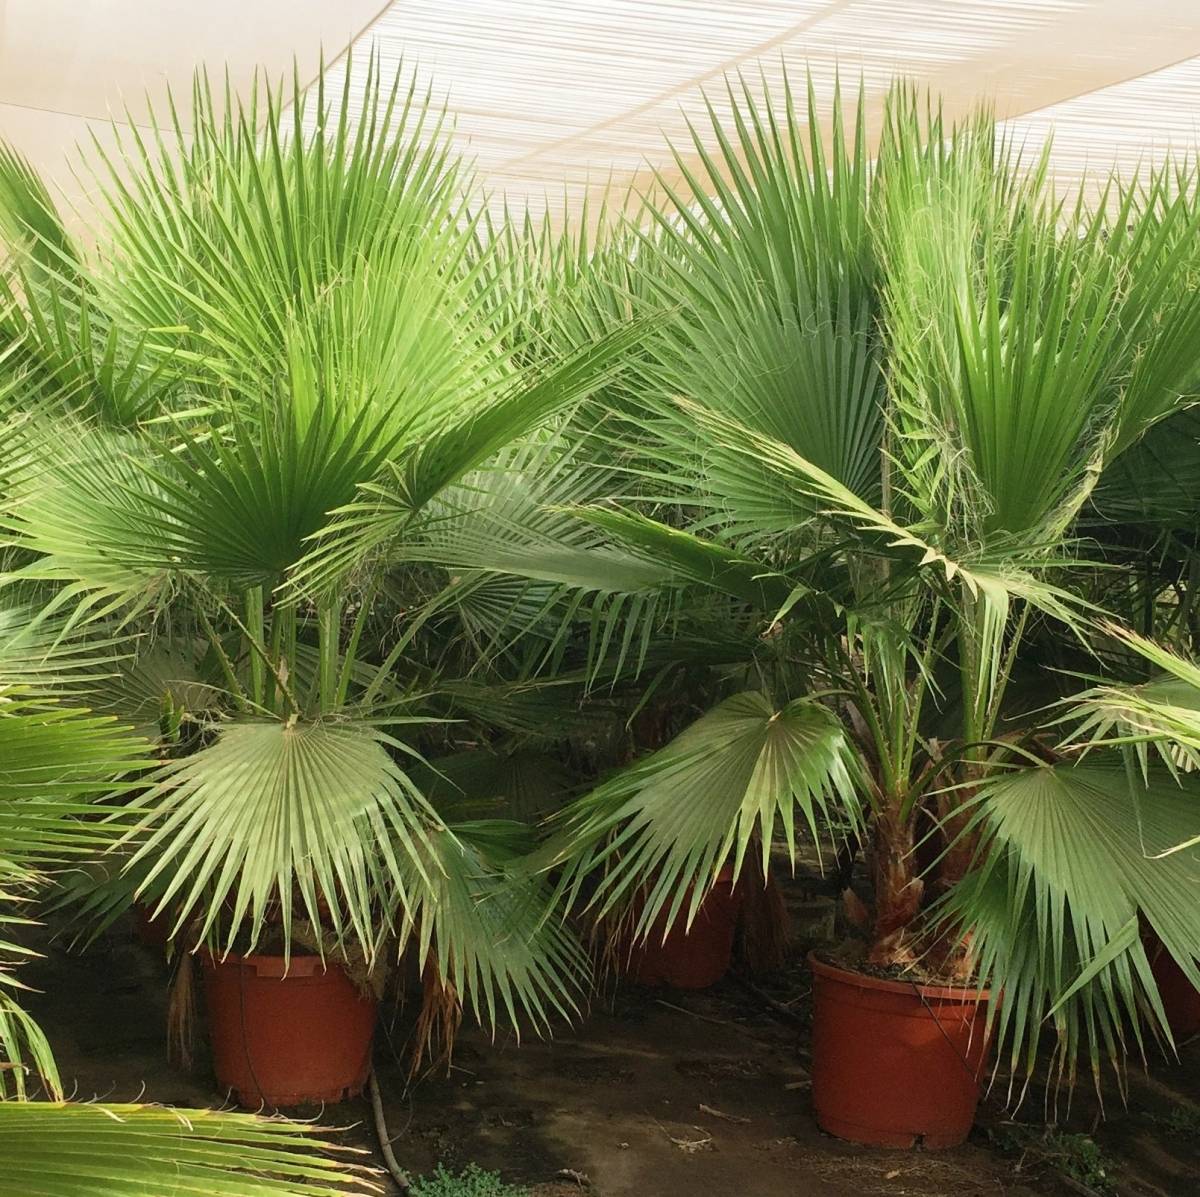 Правила ухода за пальмой вашингтония в домашних условиях – подробное руководство [2019]